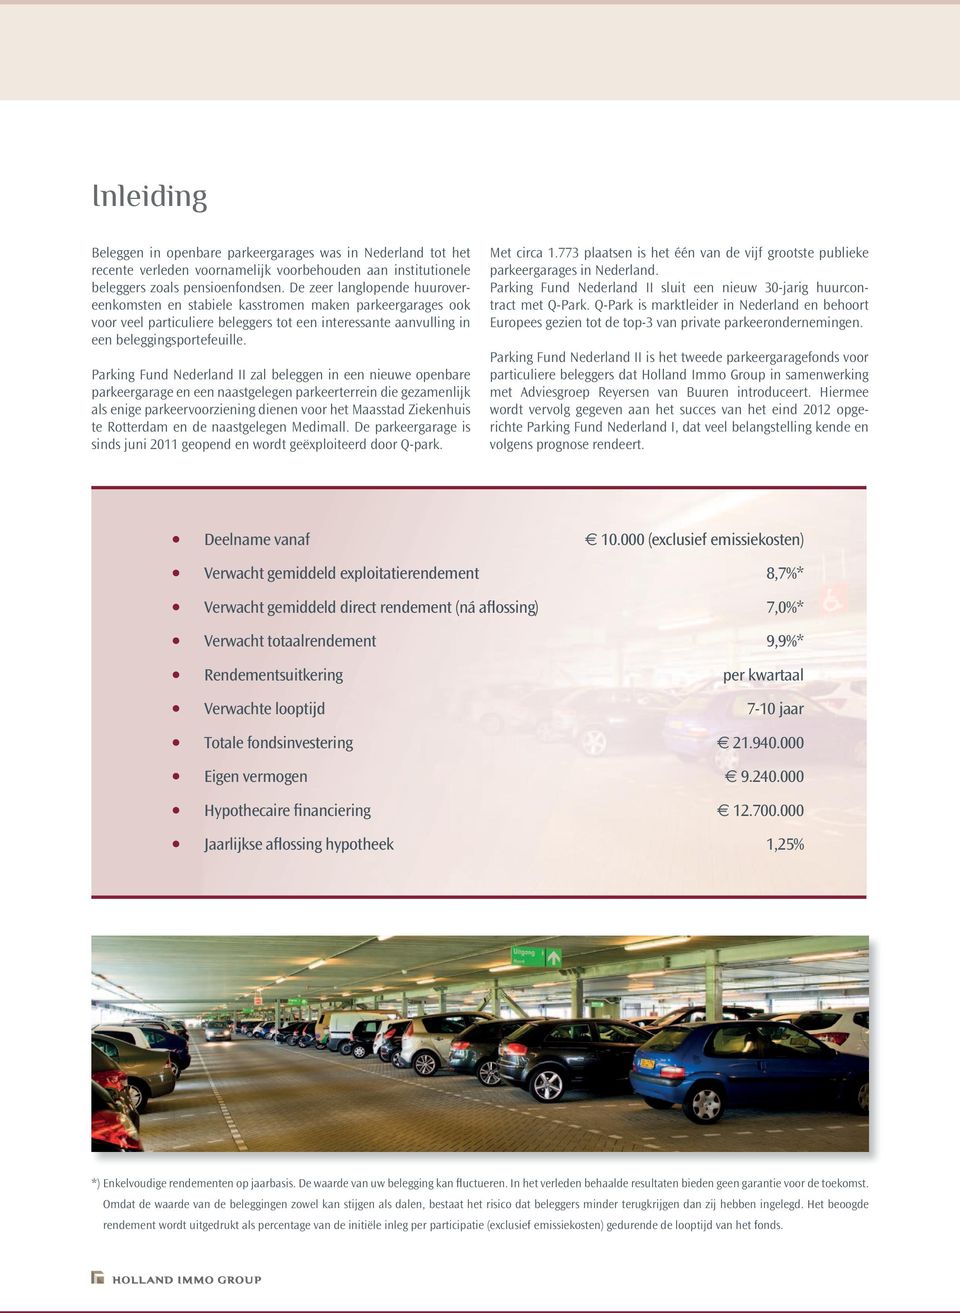 Parking Fund Nederland II zal beleggen in een nieuwe openbare parkeergarage en een naastgelegen parkeerterrein die gezamenlijk als enige parkeervoorziening dienen voor het Maasstad Ziekenhuis te